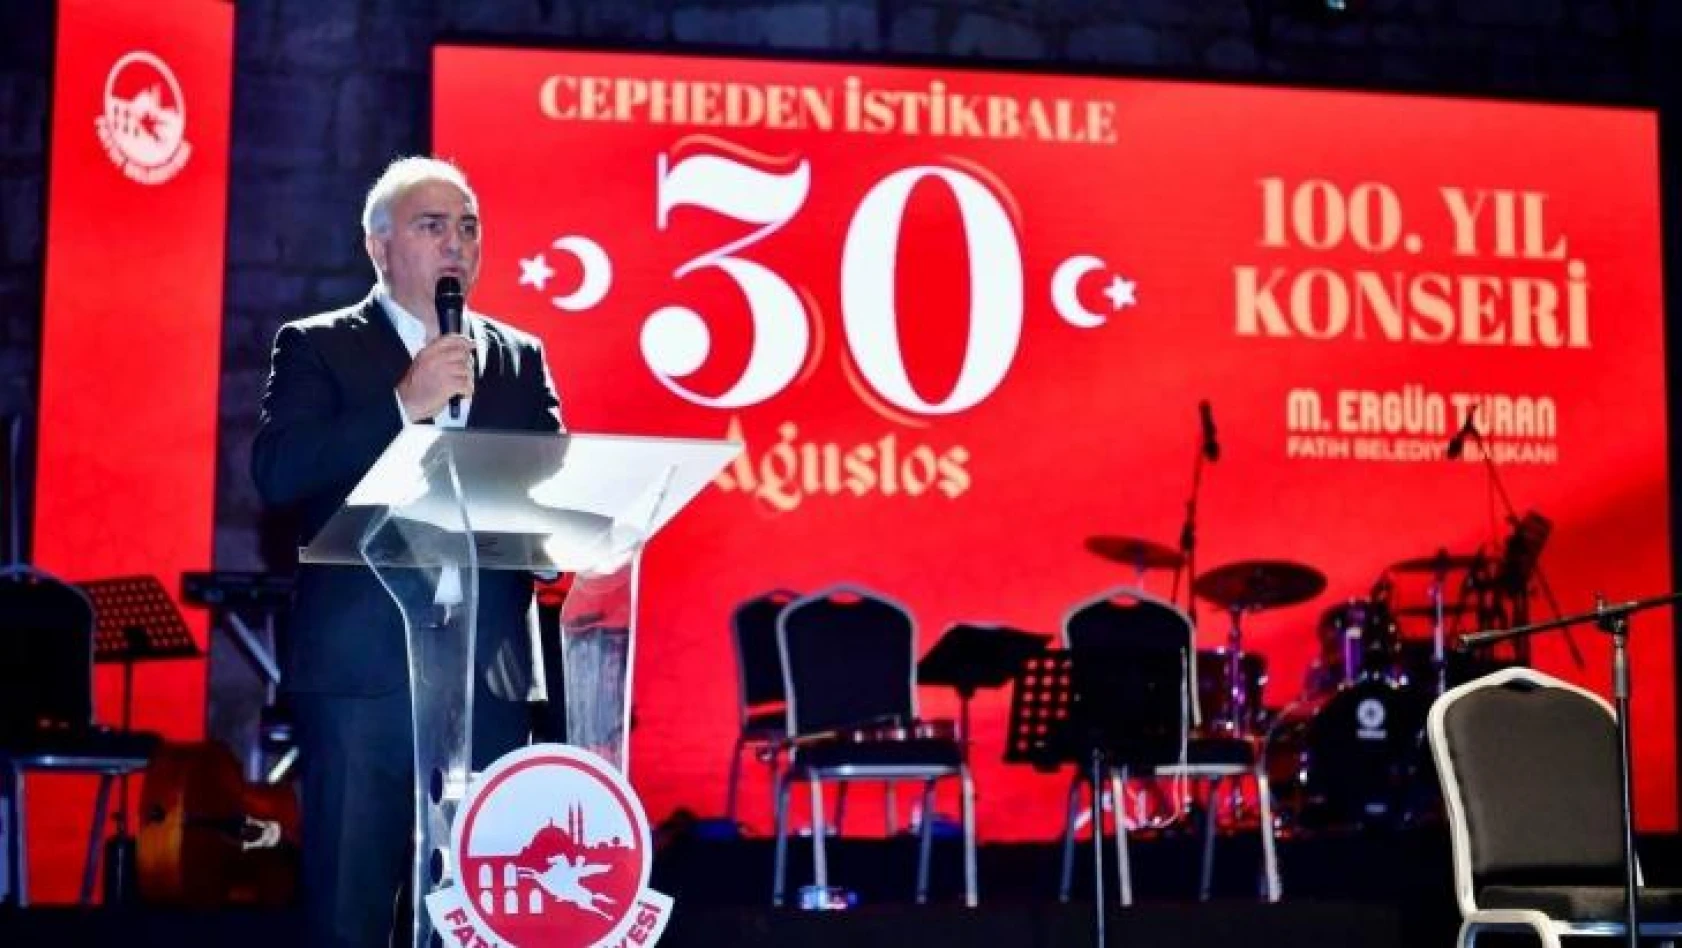 Fatih Belediyesi 'Cepheden İstikbale' programı ile 30 Ağustos'u kutladı